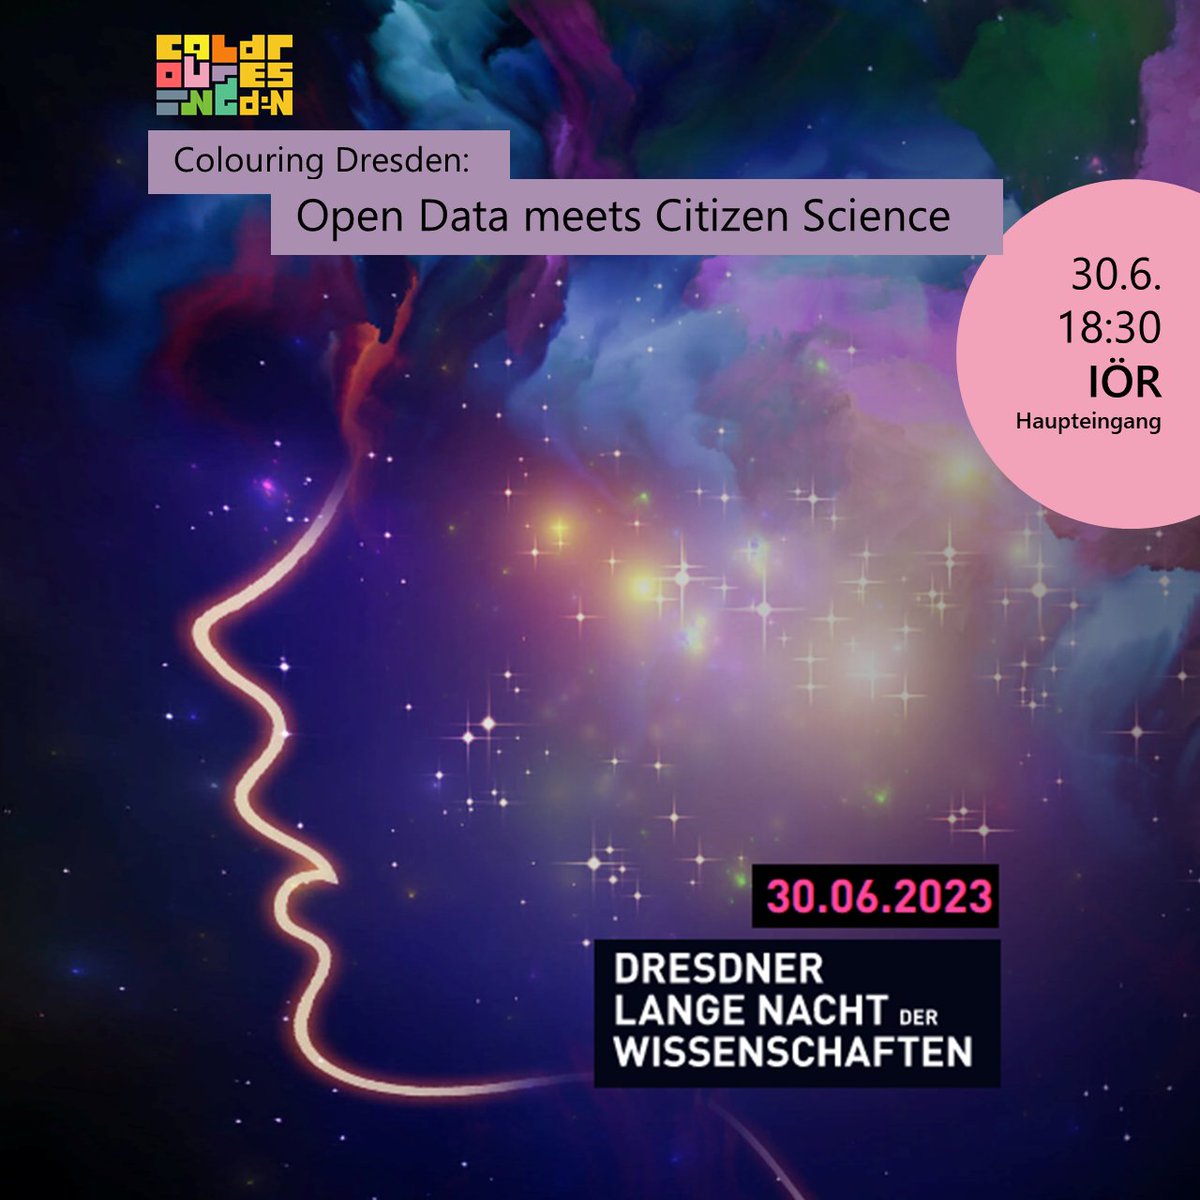 SAVE THE DATE: Kommt zur Langen Nacht der Wissenschaften (#LNDWDD) am 30.6. in Dresden. Bei einem Mapathon könnt ihr unser #CitizenScience Projekt @colouringDD kennenlernen. wissenschaftsnacht-dresden.de/programm/detai…